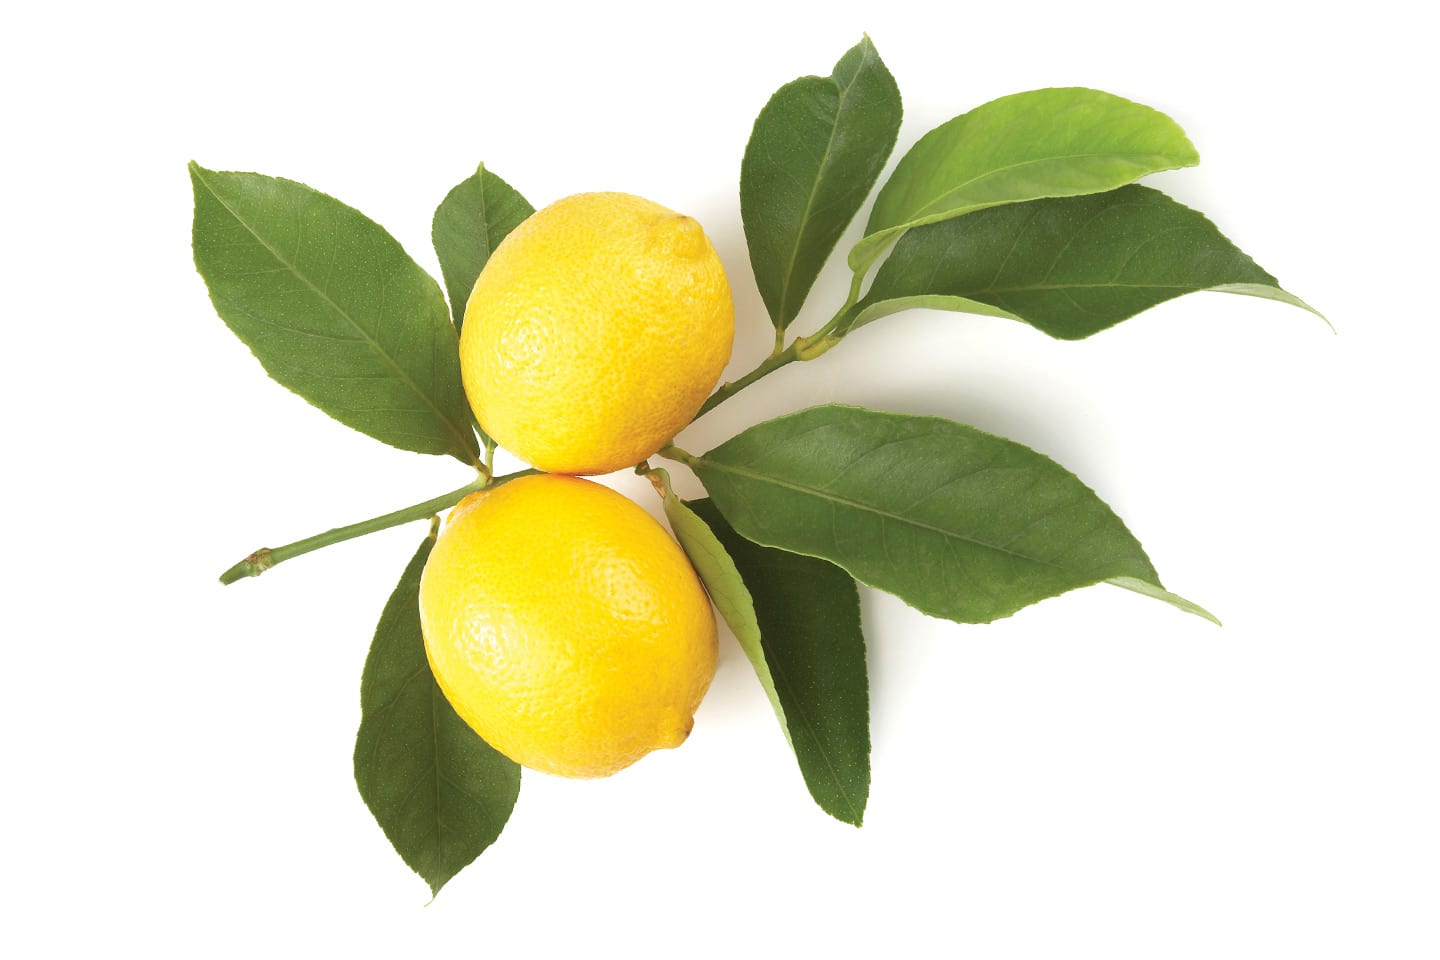 lemons on branch